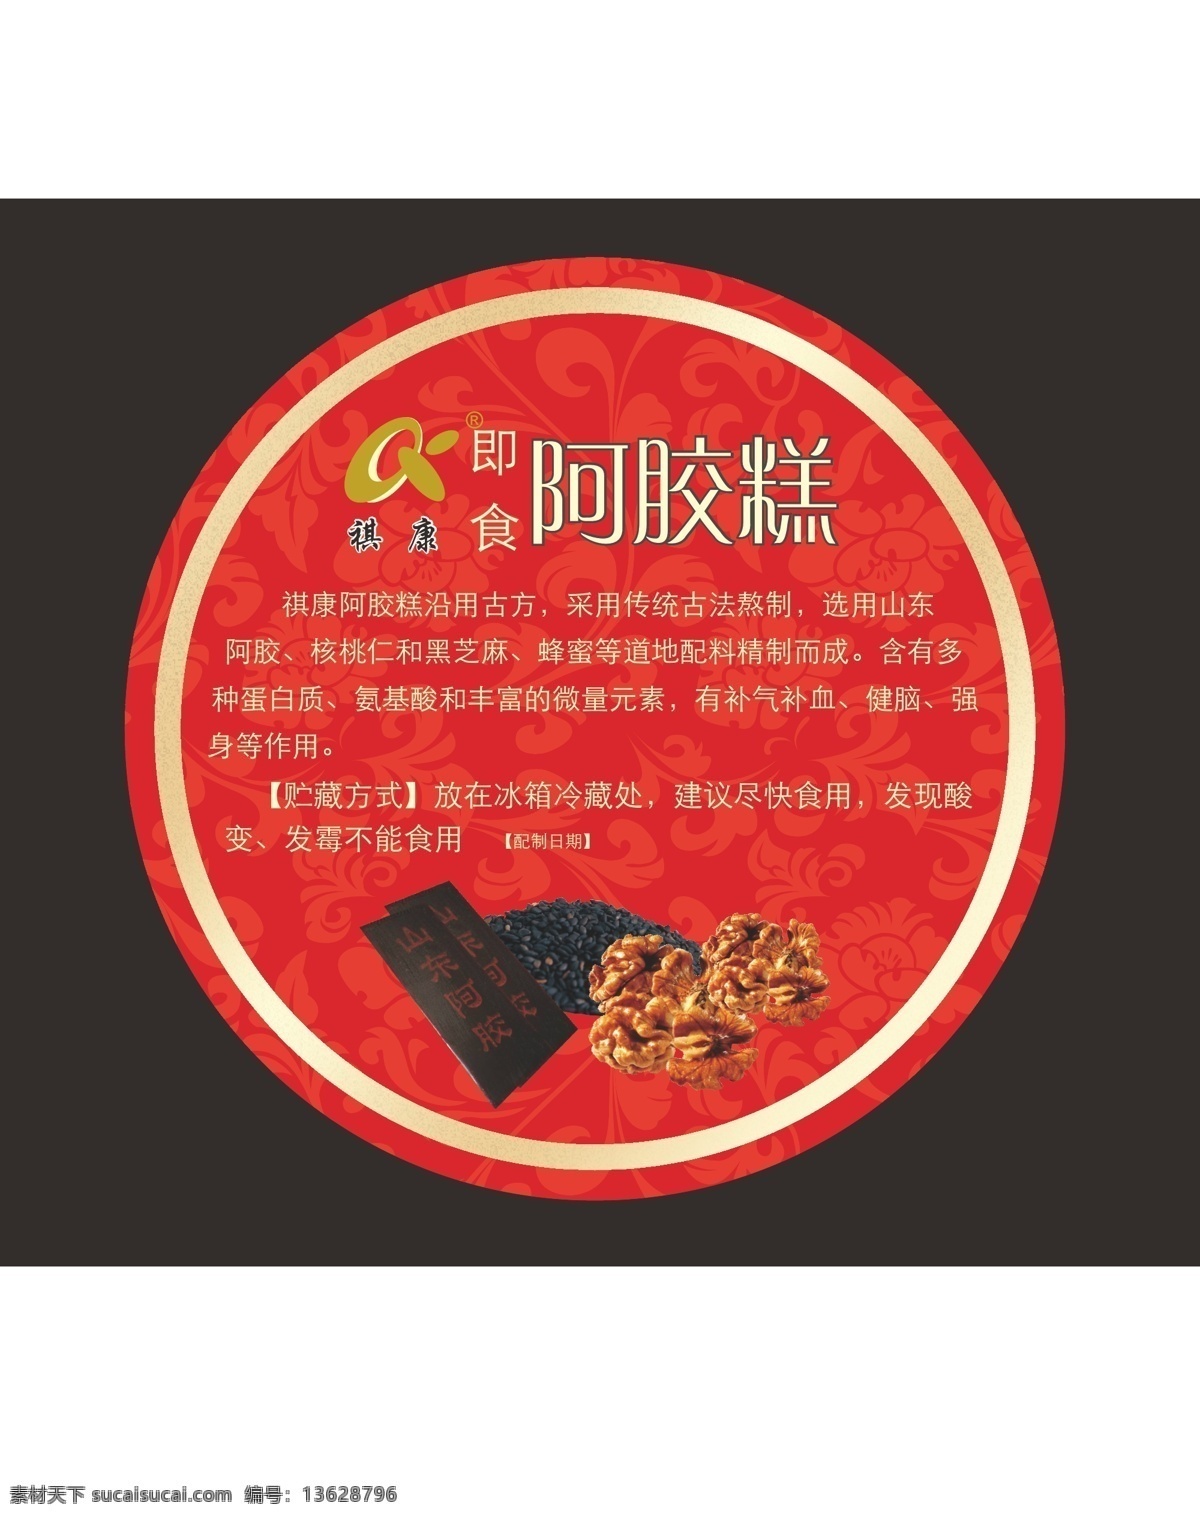 阿胶 糕 包装设计 蜂蜜 黑芝麻 阿胶糕 精品标签 红色标贴 矢量 淘宝素材 淘宝促销标签